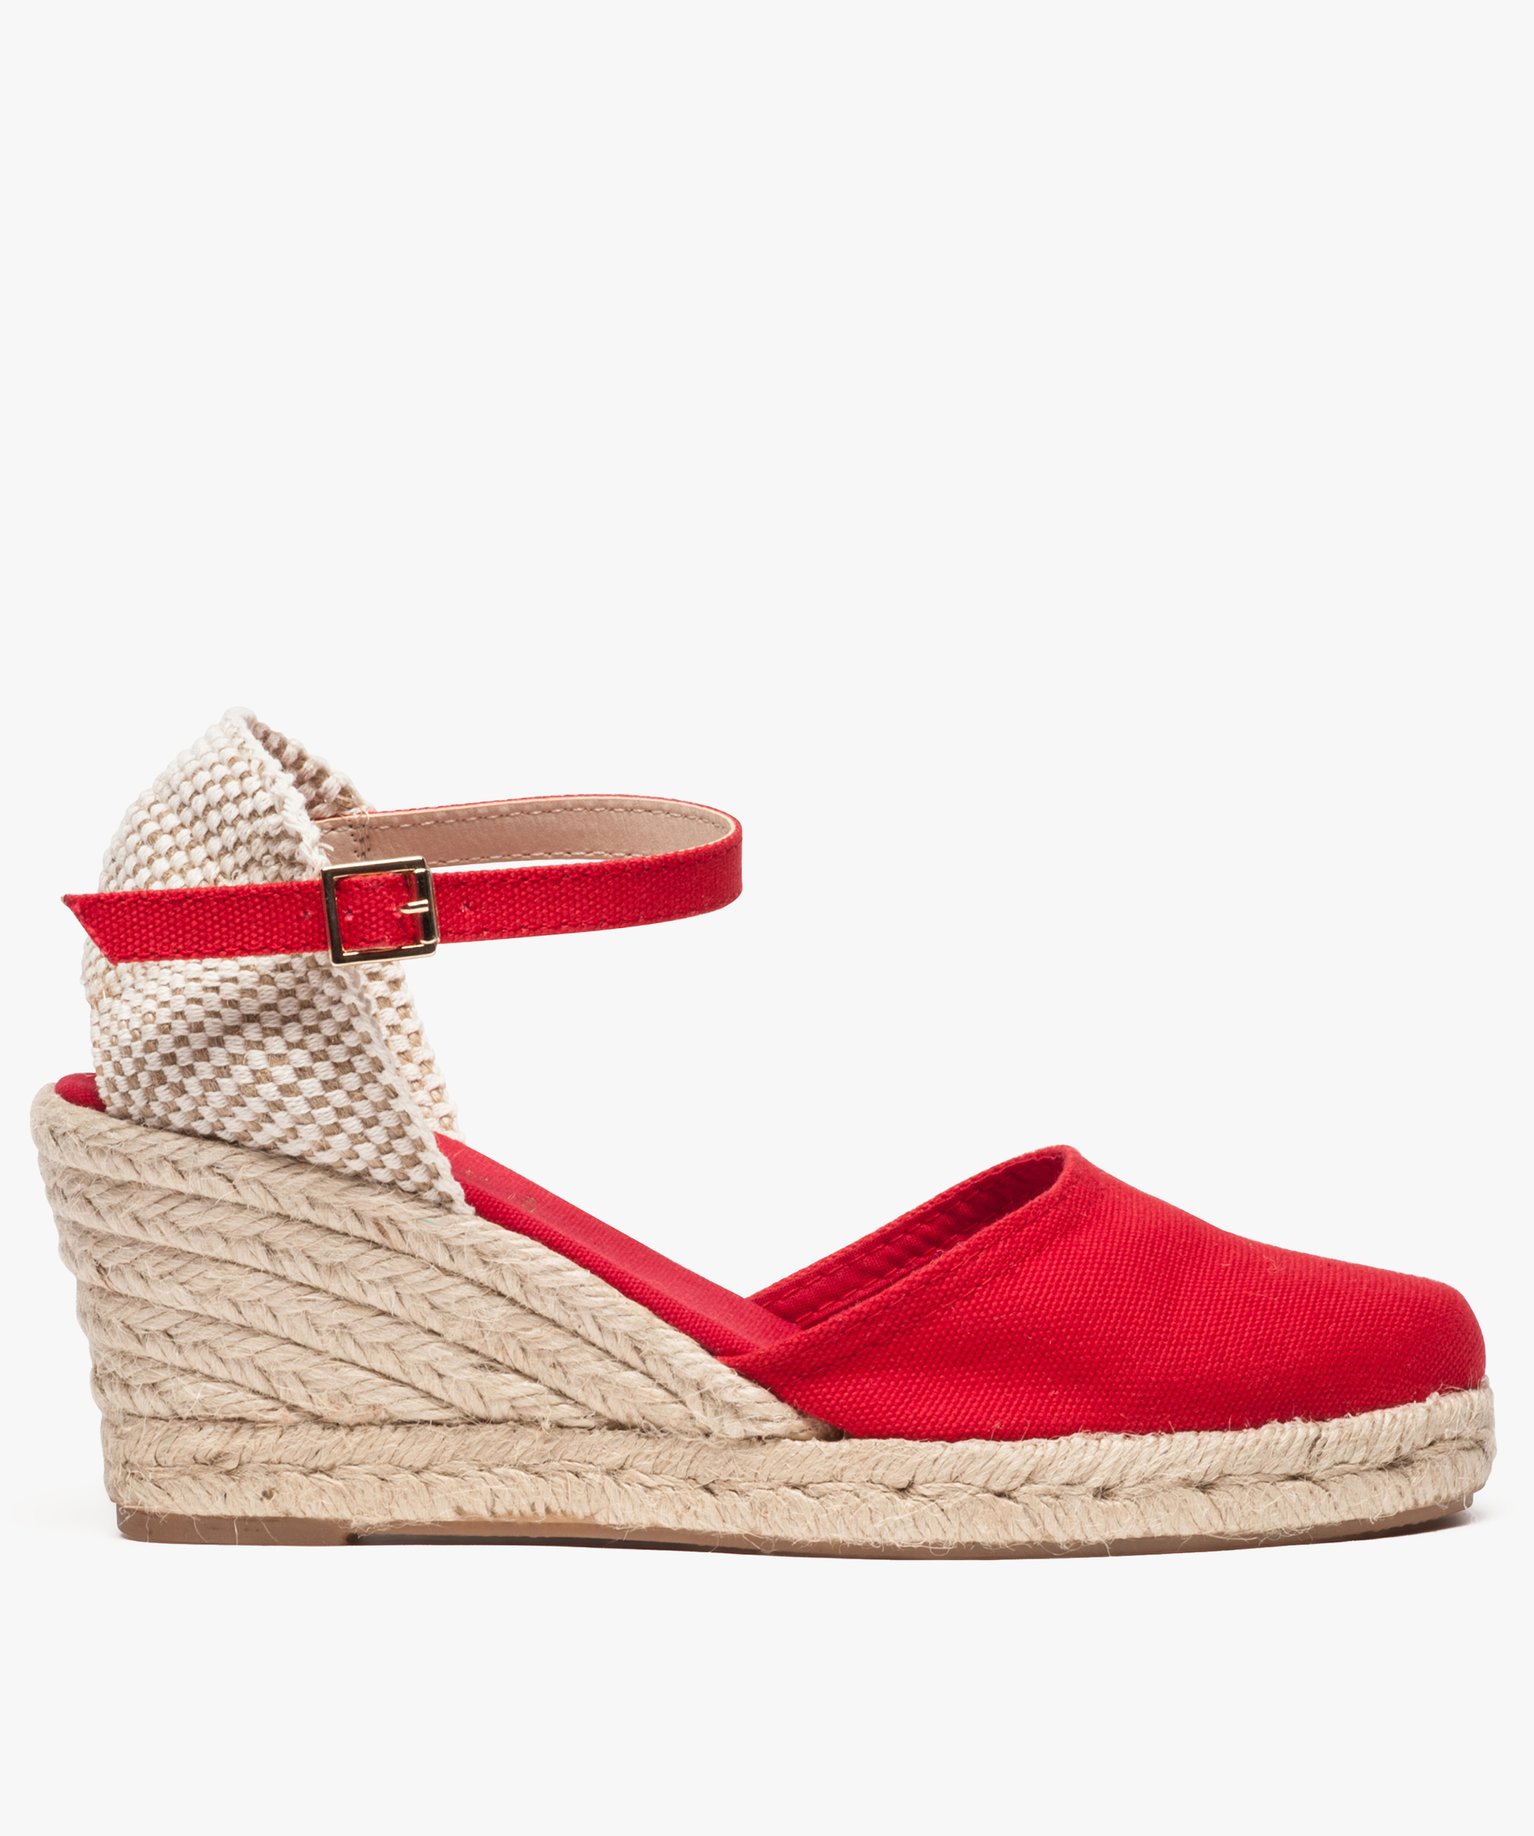 BLAUDELL Sandales Castañer en coloris Rouge Femme Chaussures Chaussures à talons Sandales compensées 